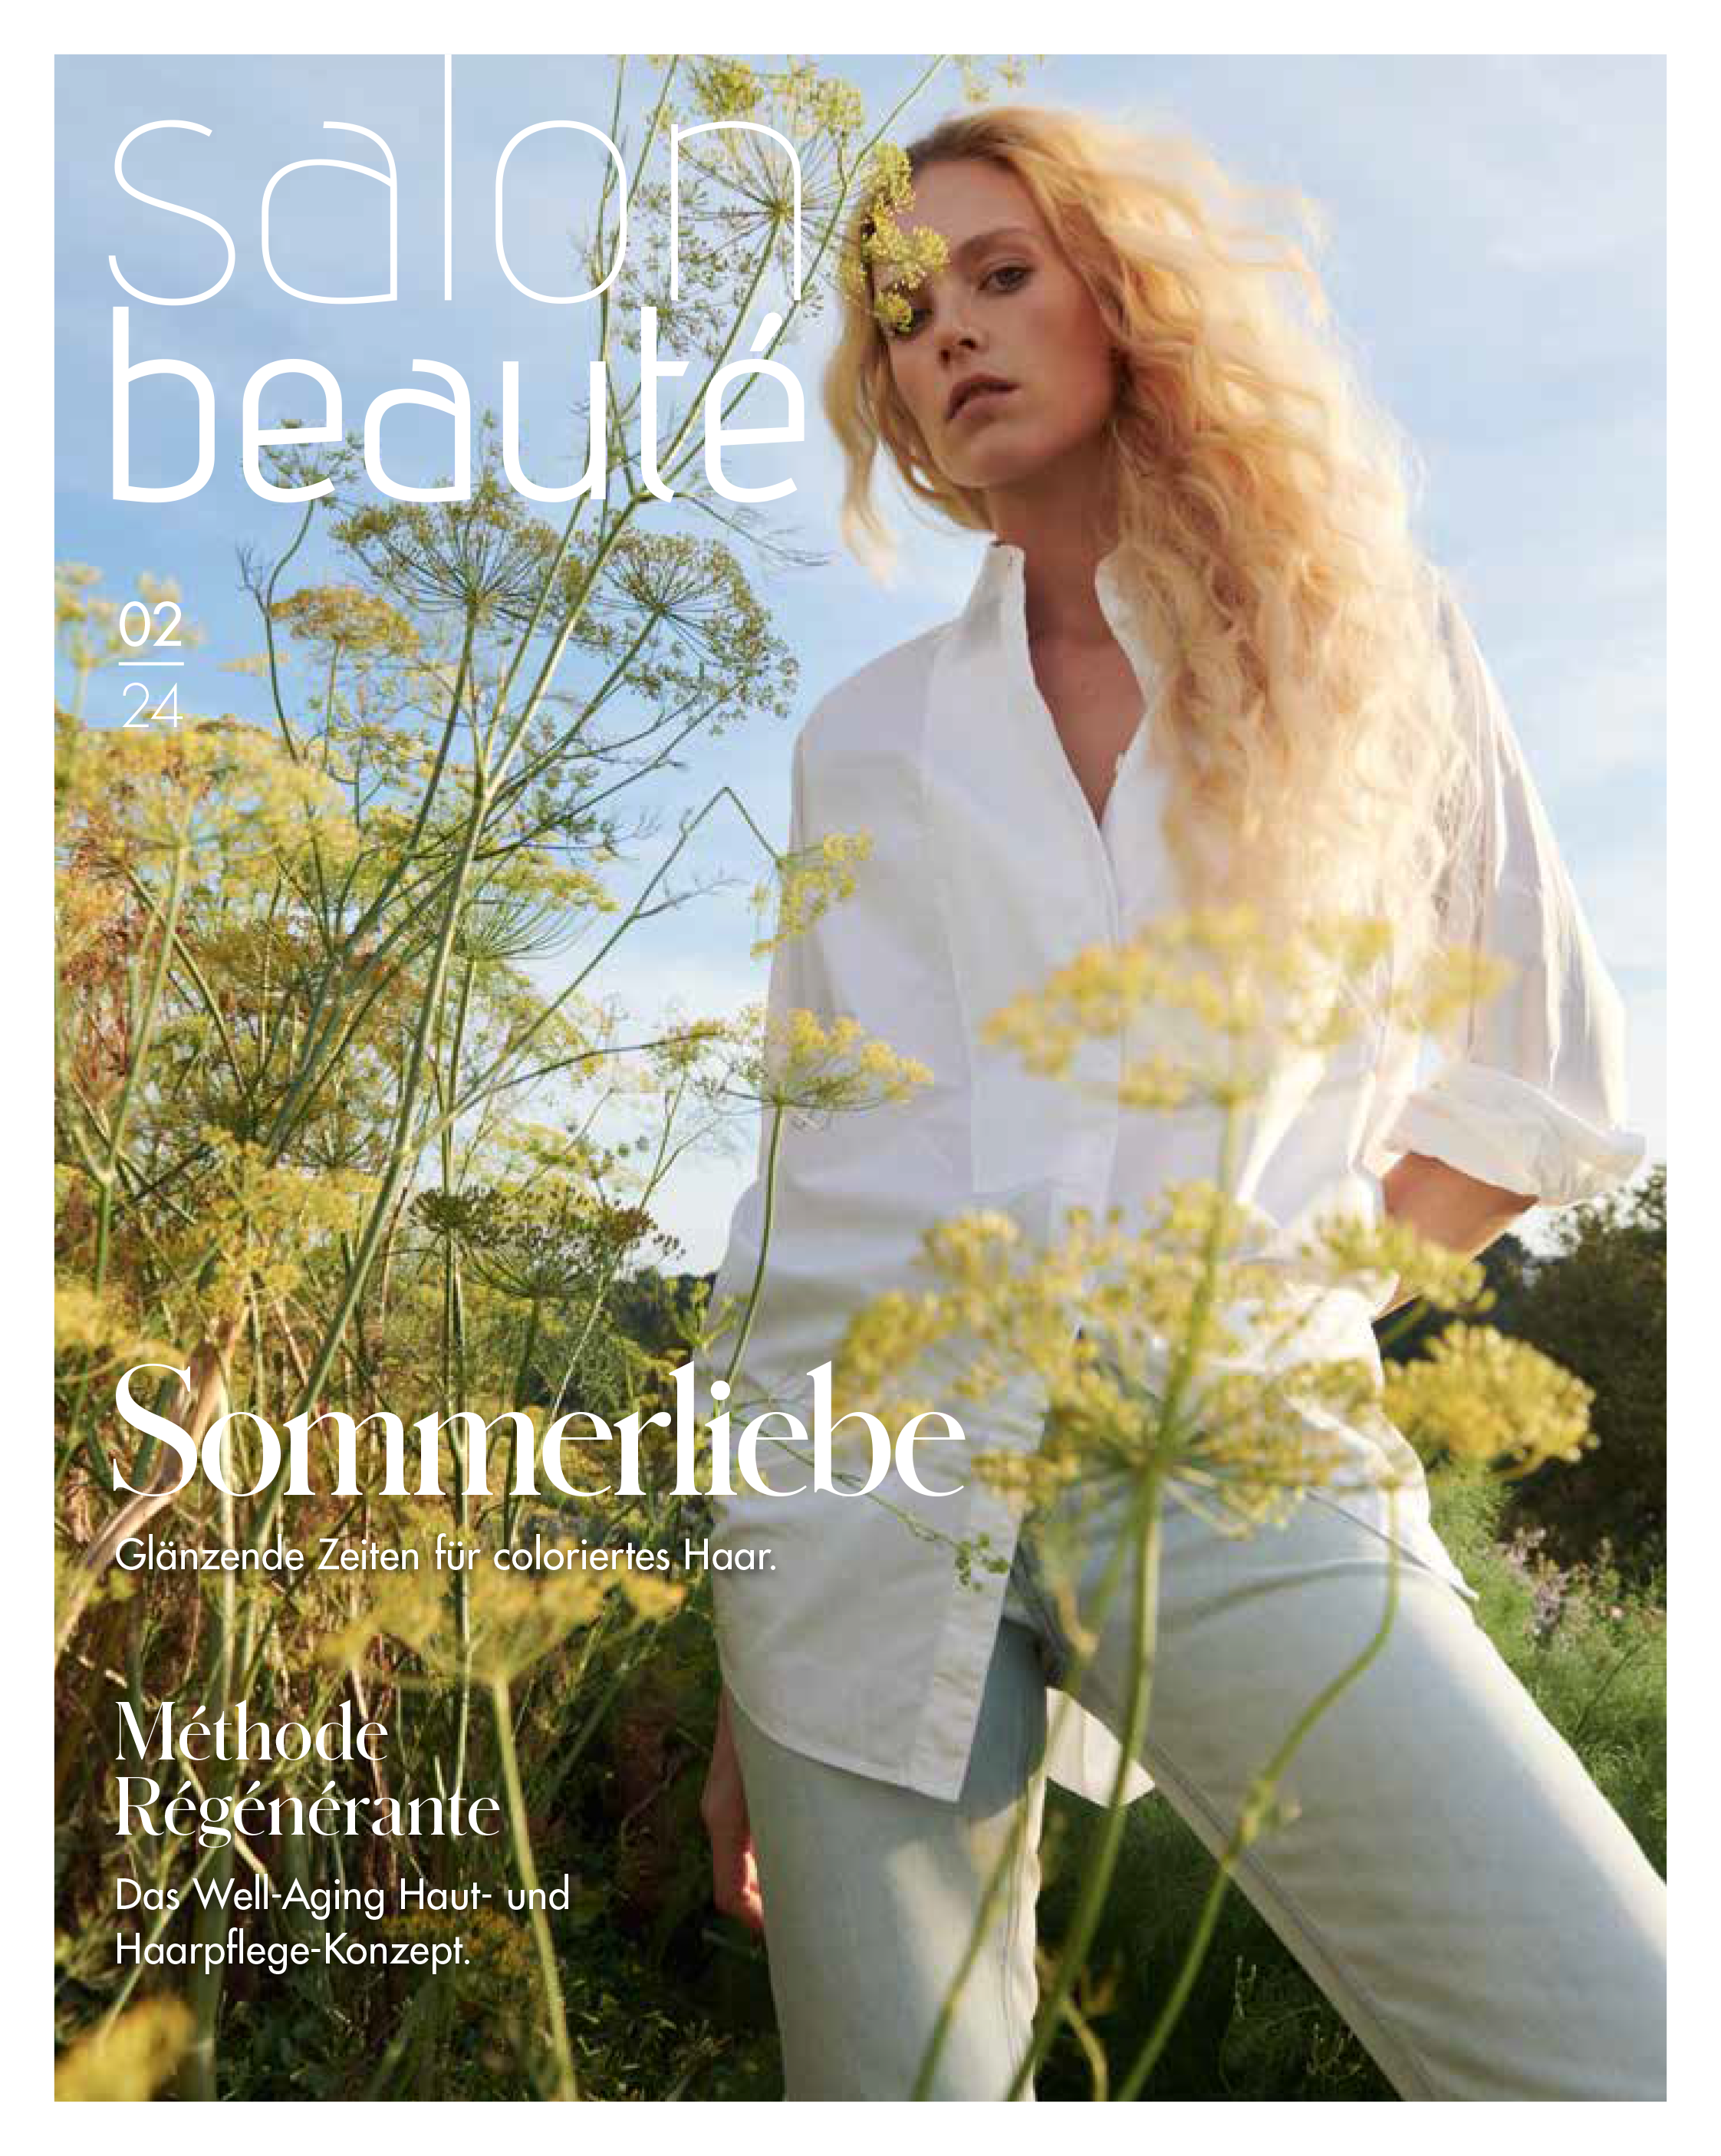 Aktuelle Salon Beauté 02/24, das Beauty-Magazin von La Biosthétique.